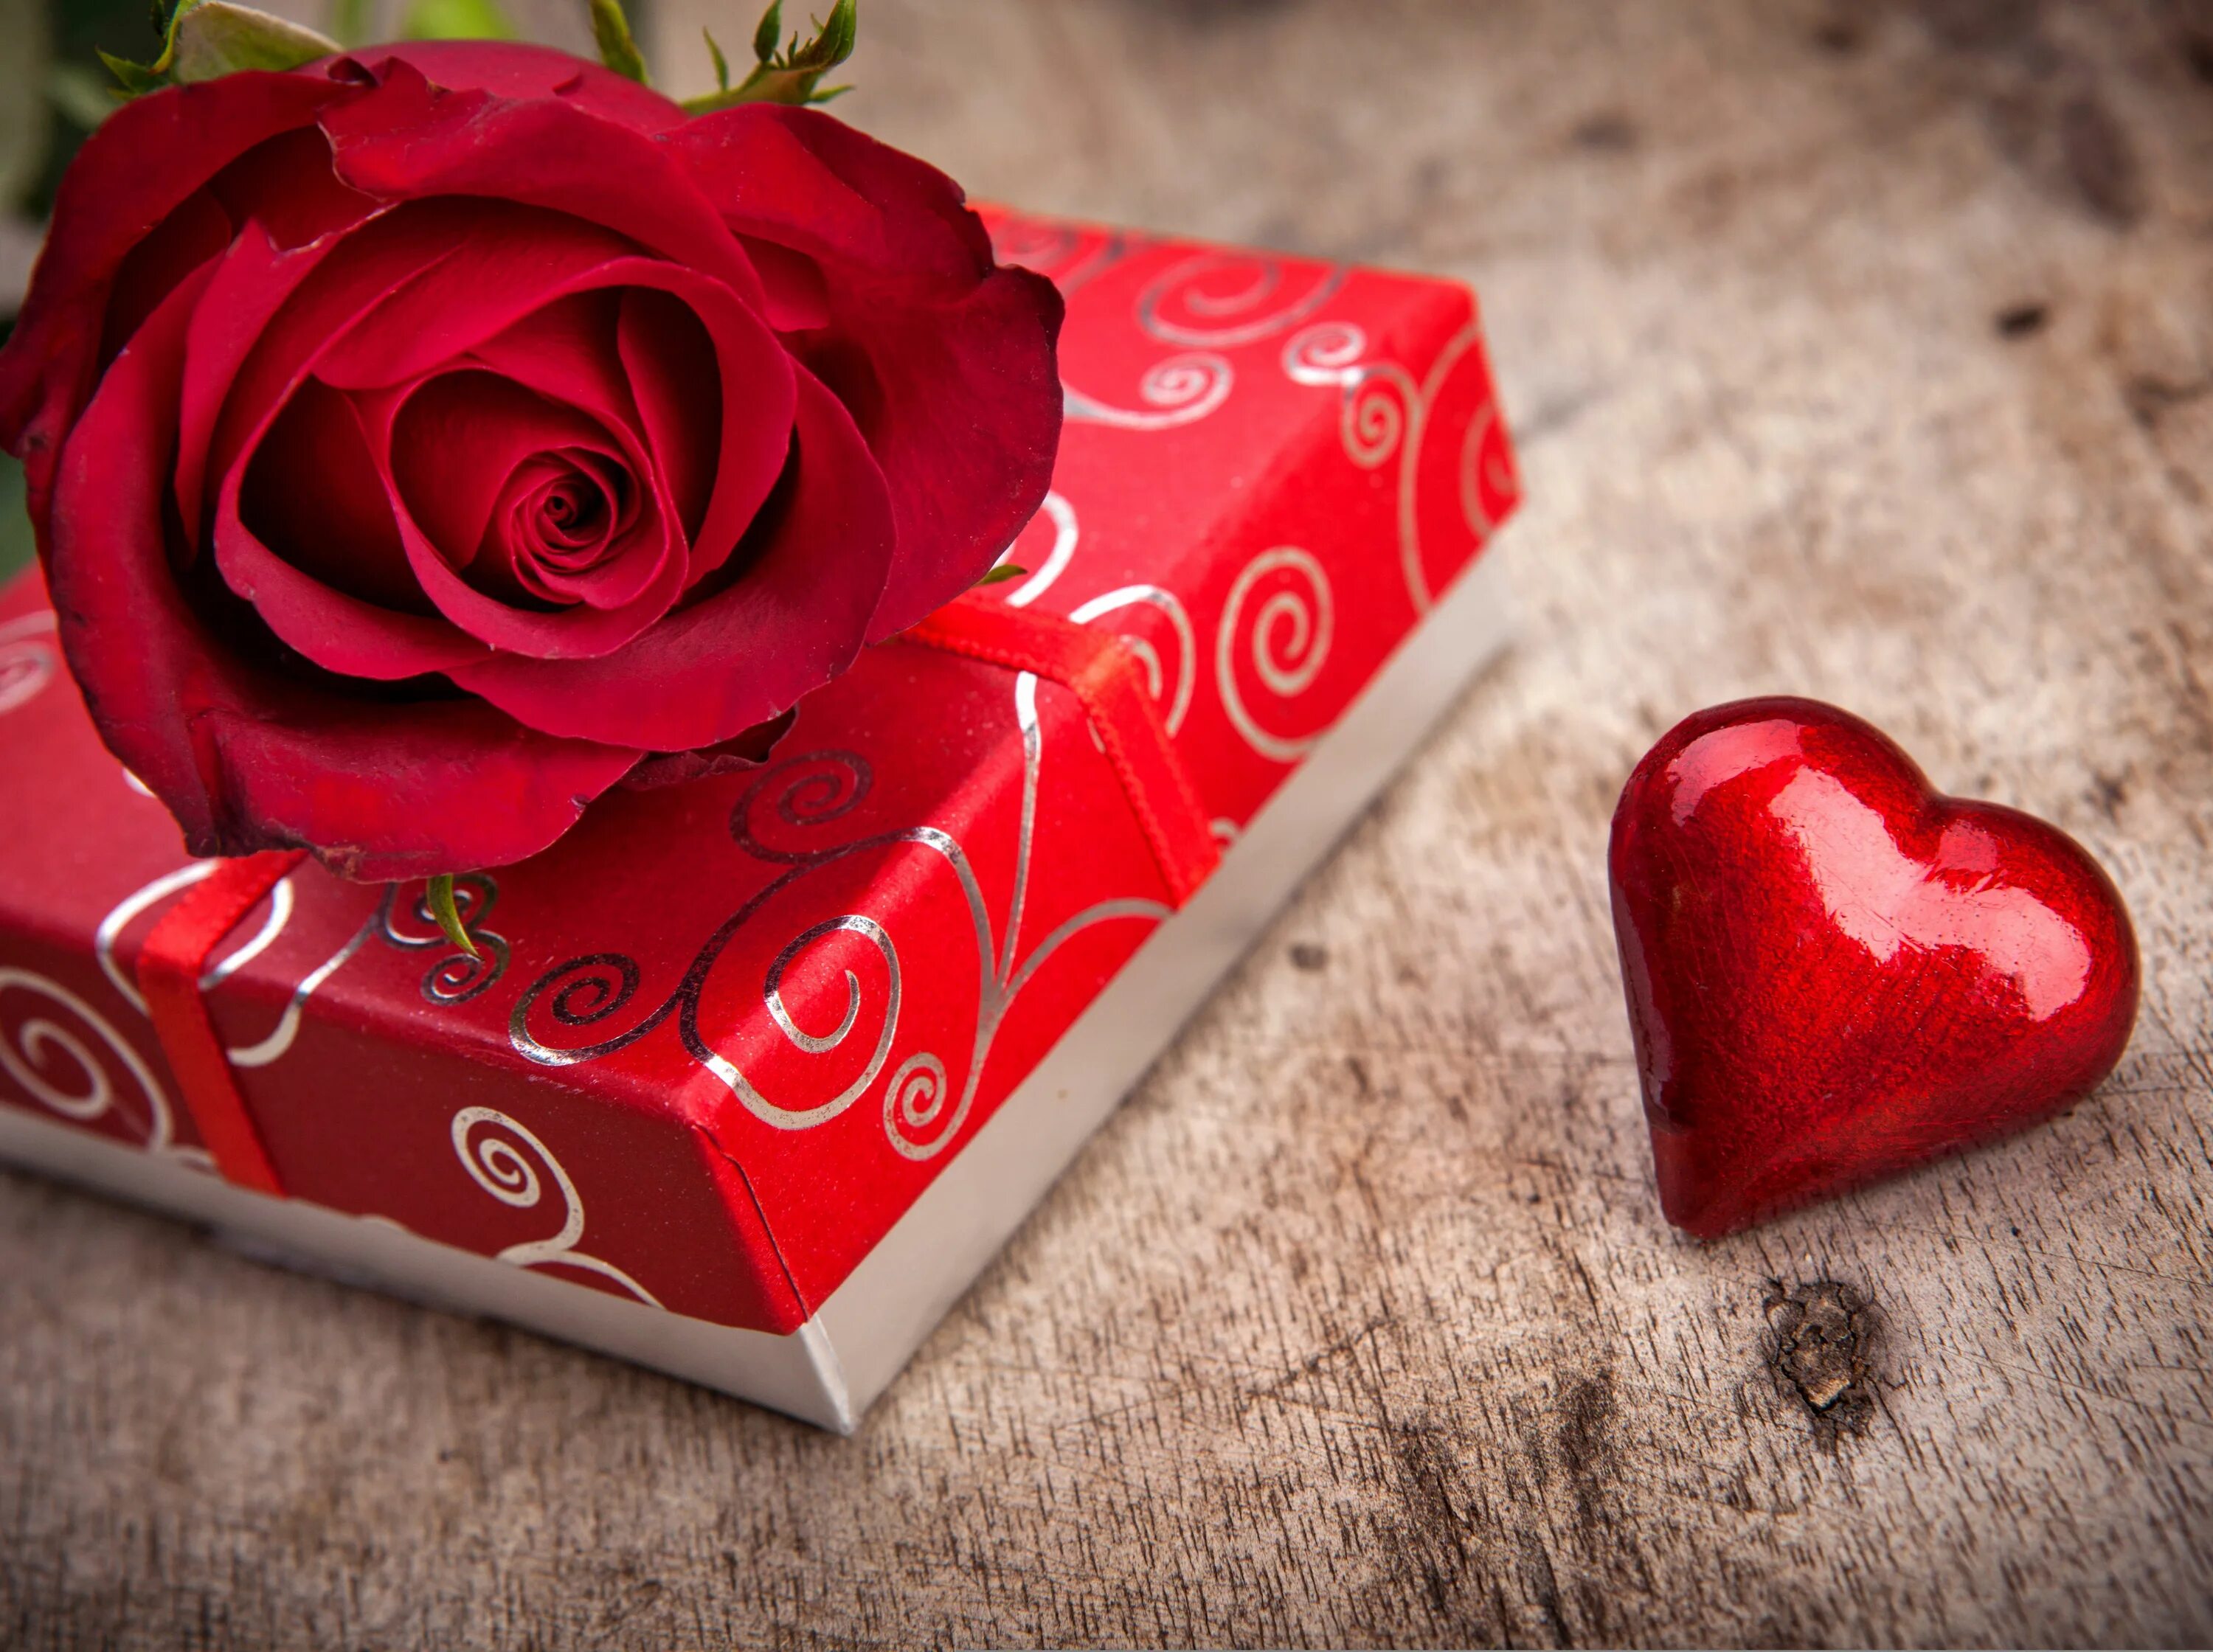 Rose romance. Красивые подарки. Романтический подарок девушке. Красивый подарок любимой. Красивый подарок для любимой женщины.